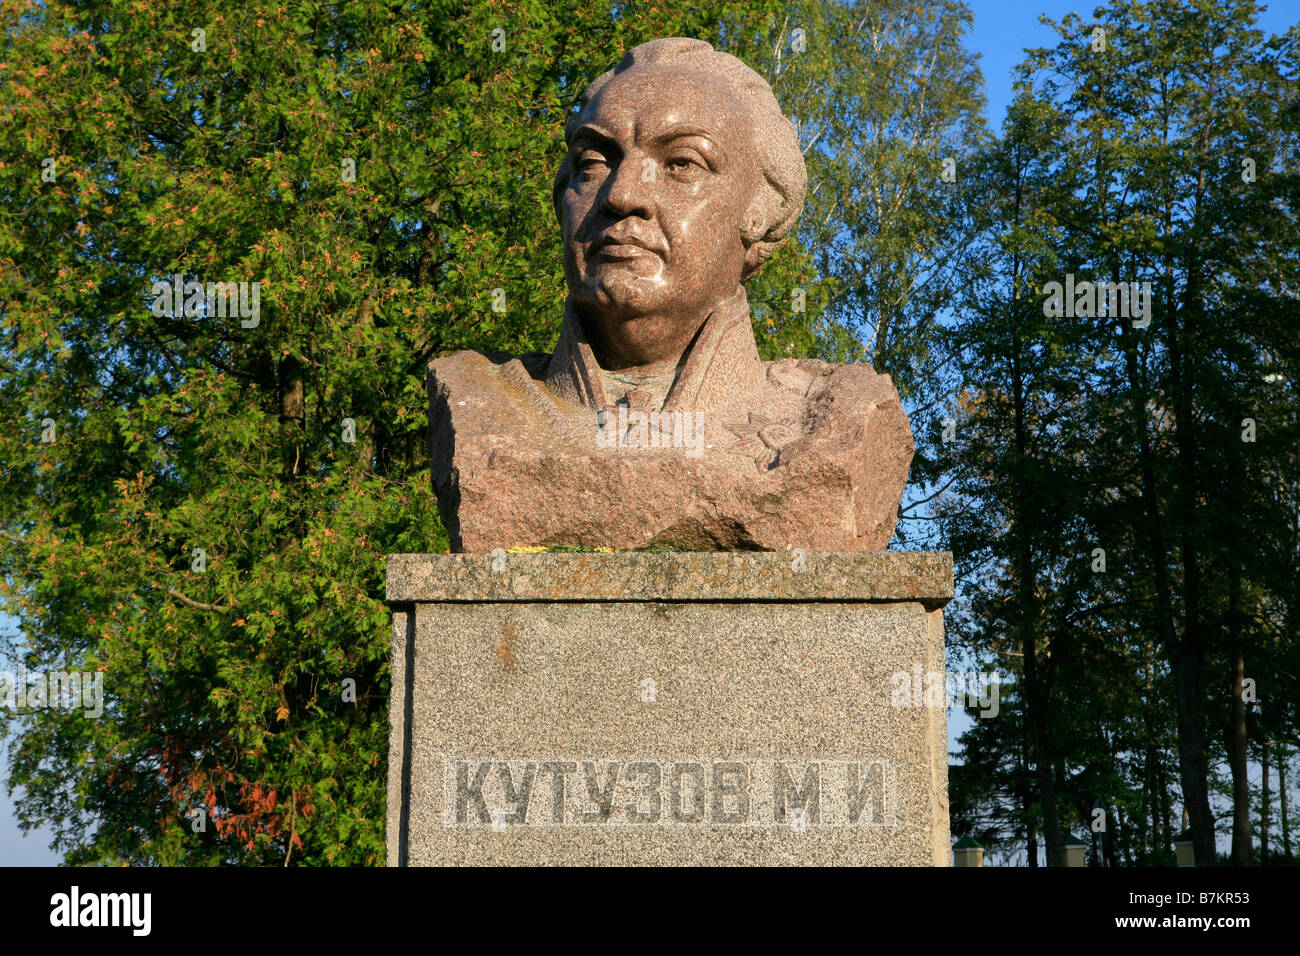 Statua del Principe Mikhail Illarionovich Golenishchev-Kutuzov, il comandante supremo dell'esercito russo a Borodinò, Russia Foto Stock